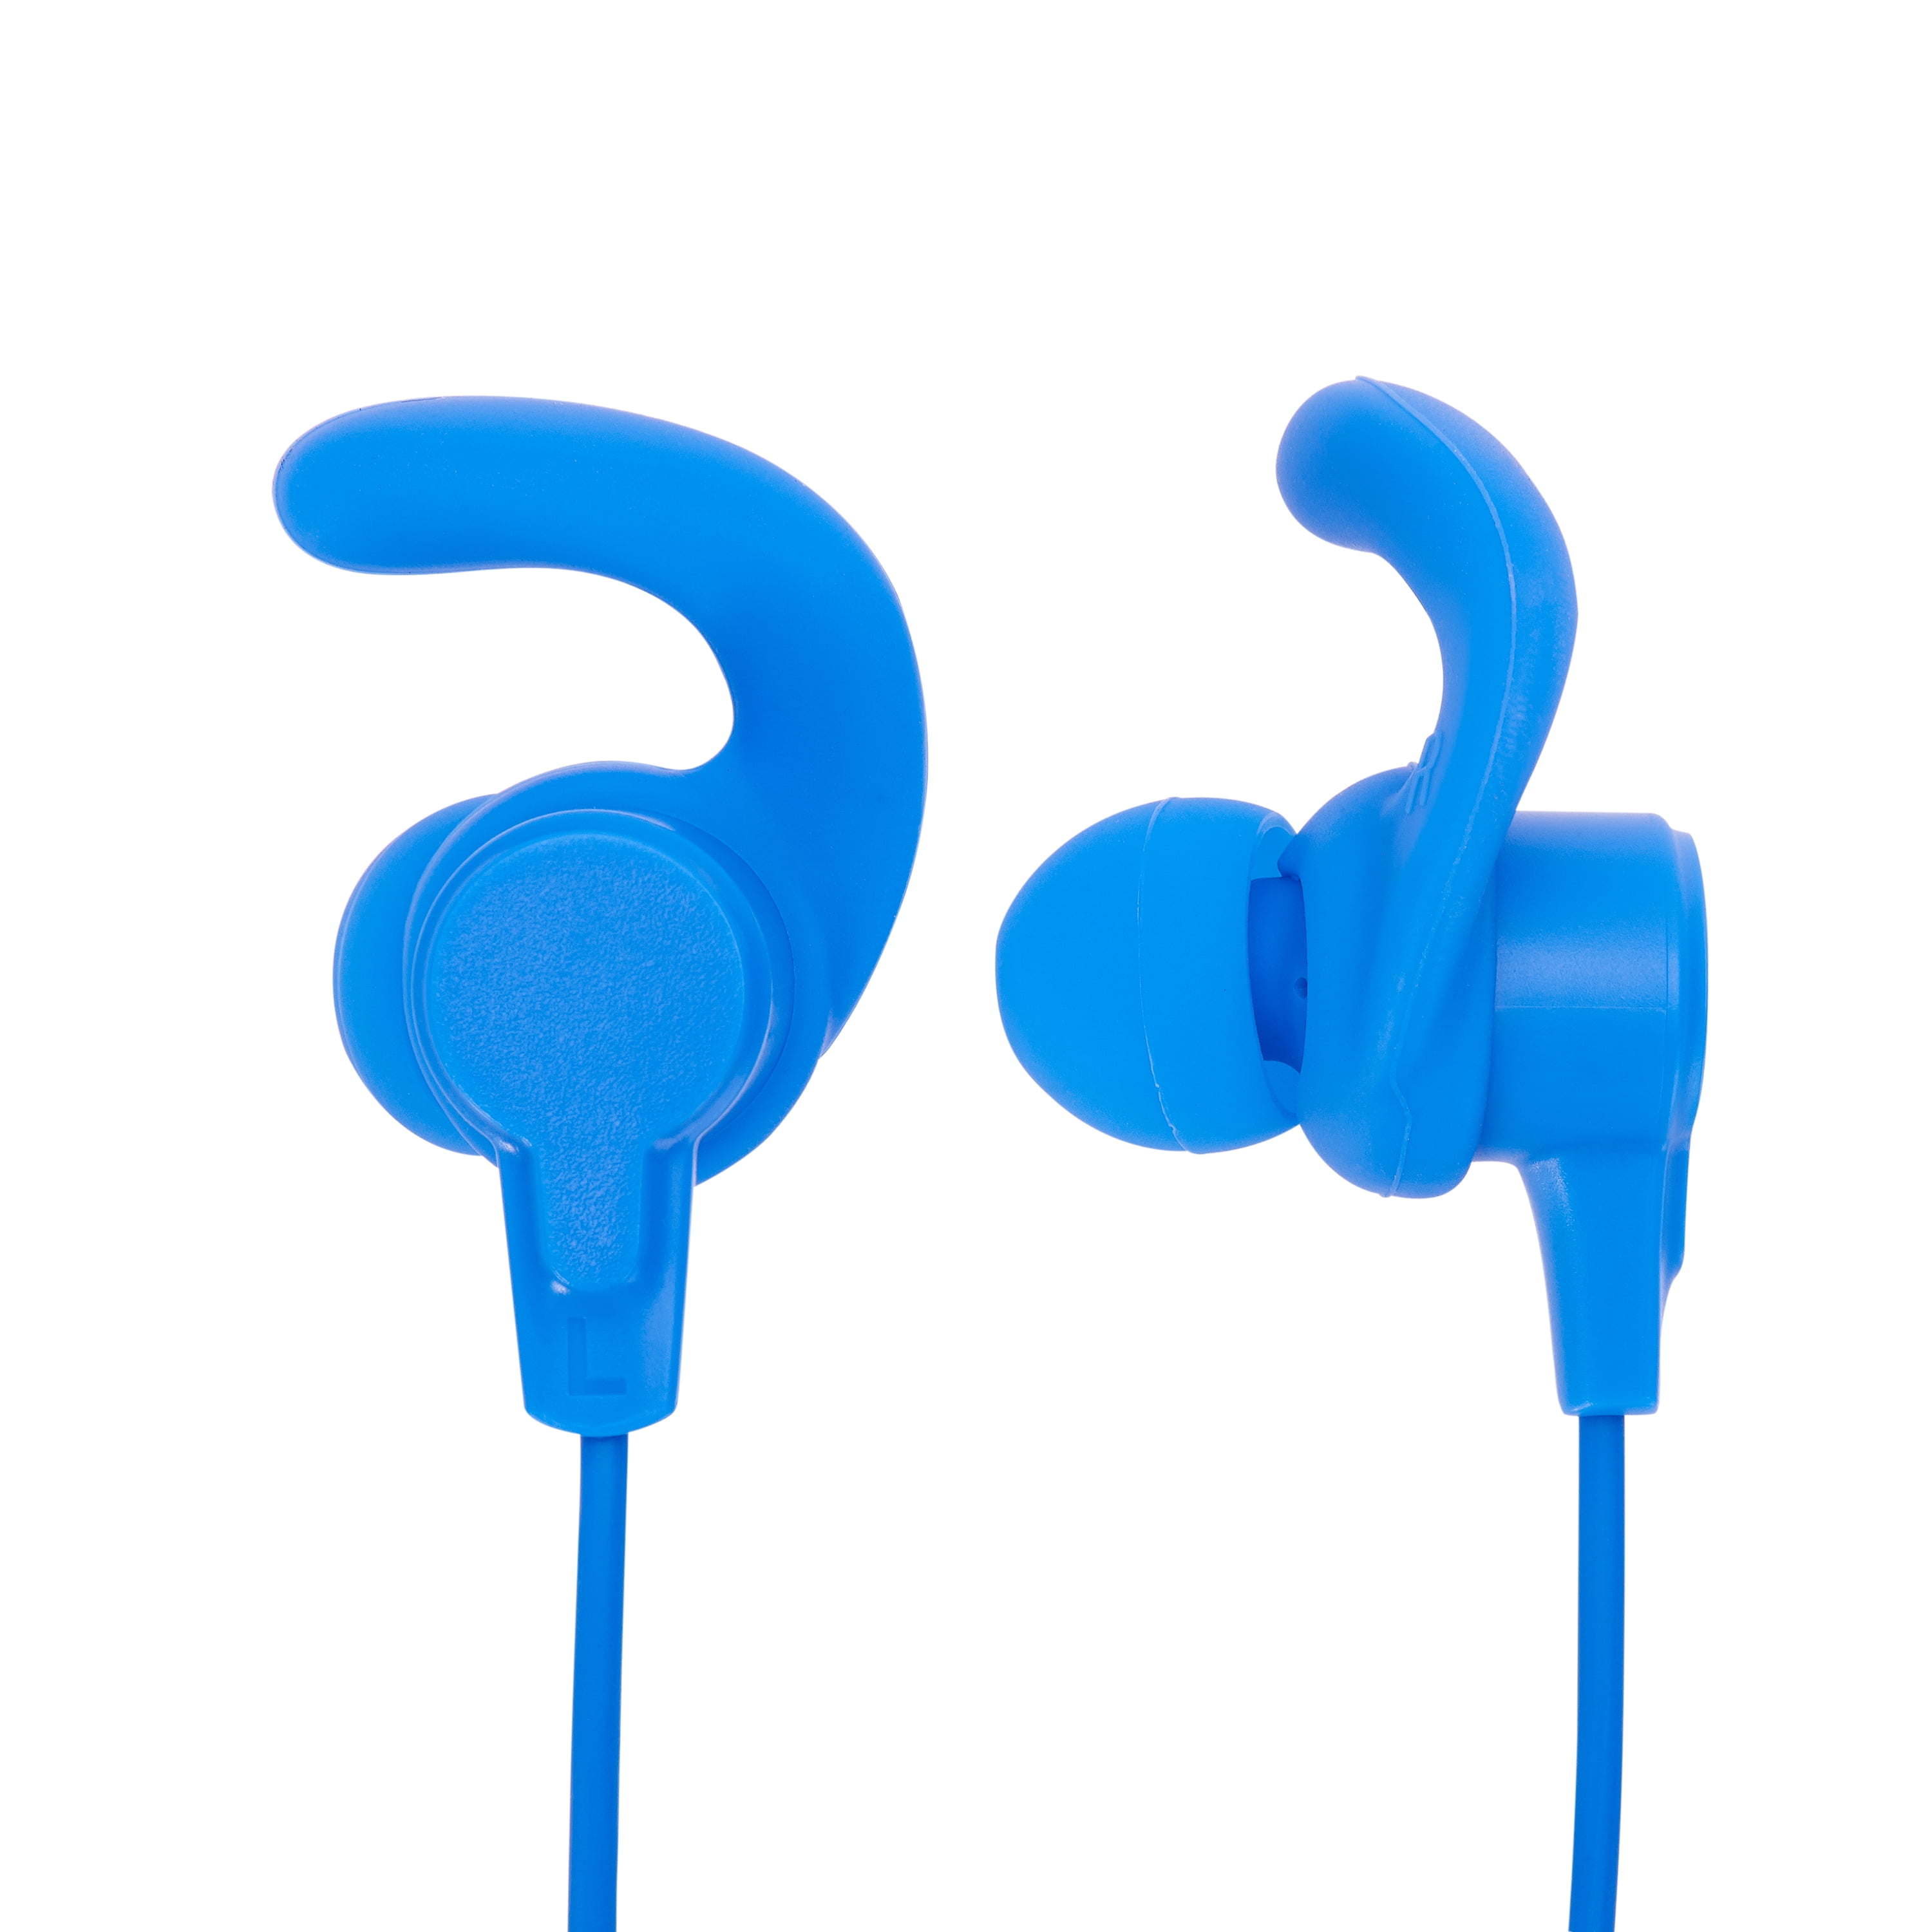 Onn Bluetooth In-Ear Earbuds, Blue - Walmart.com